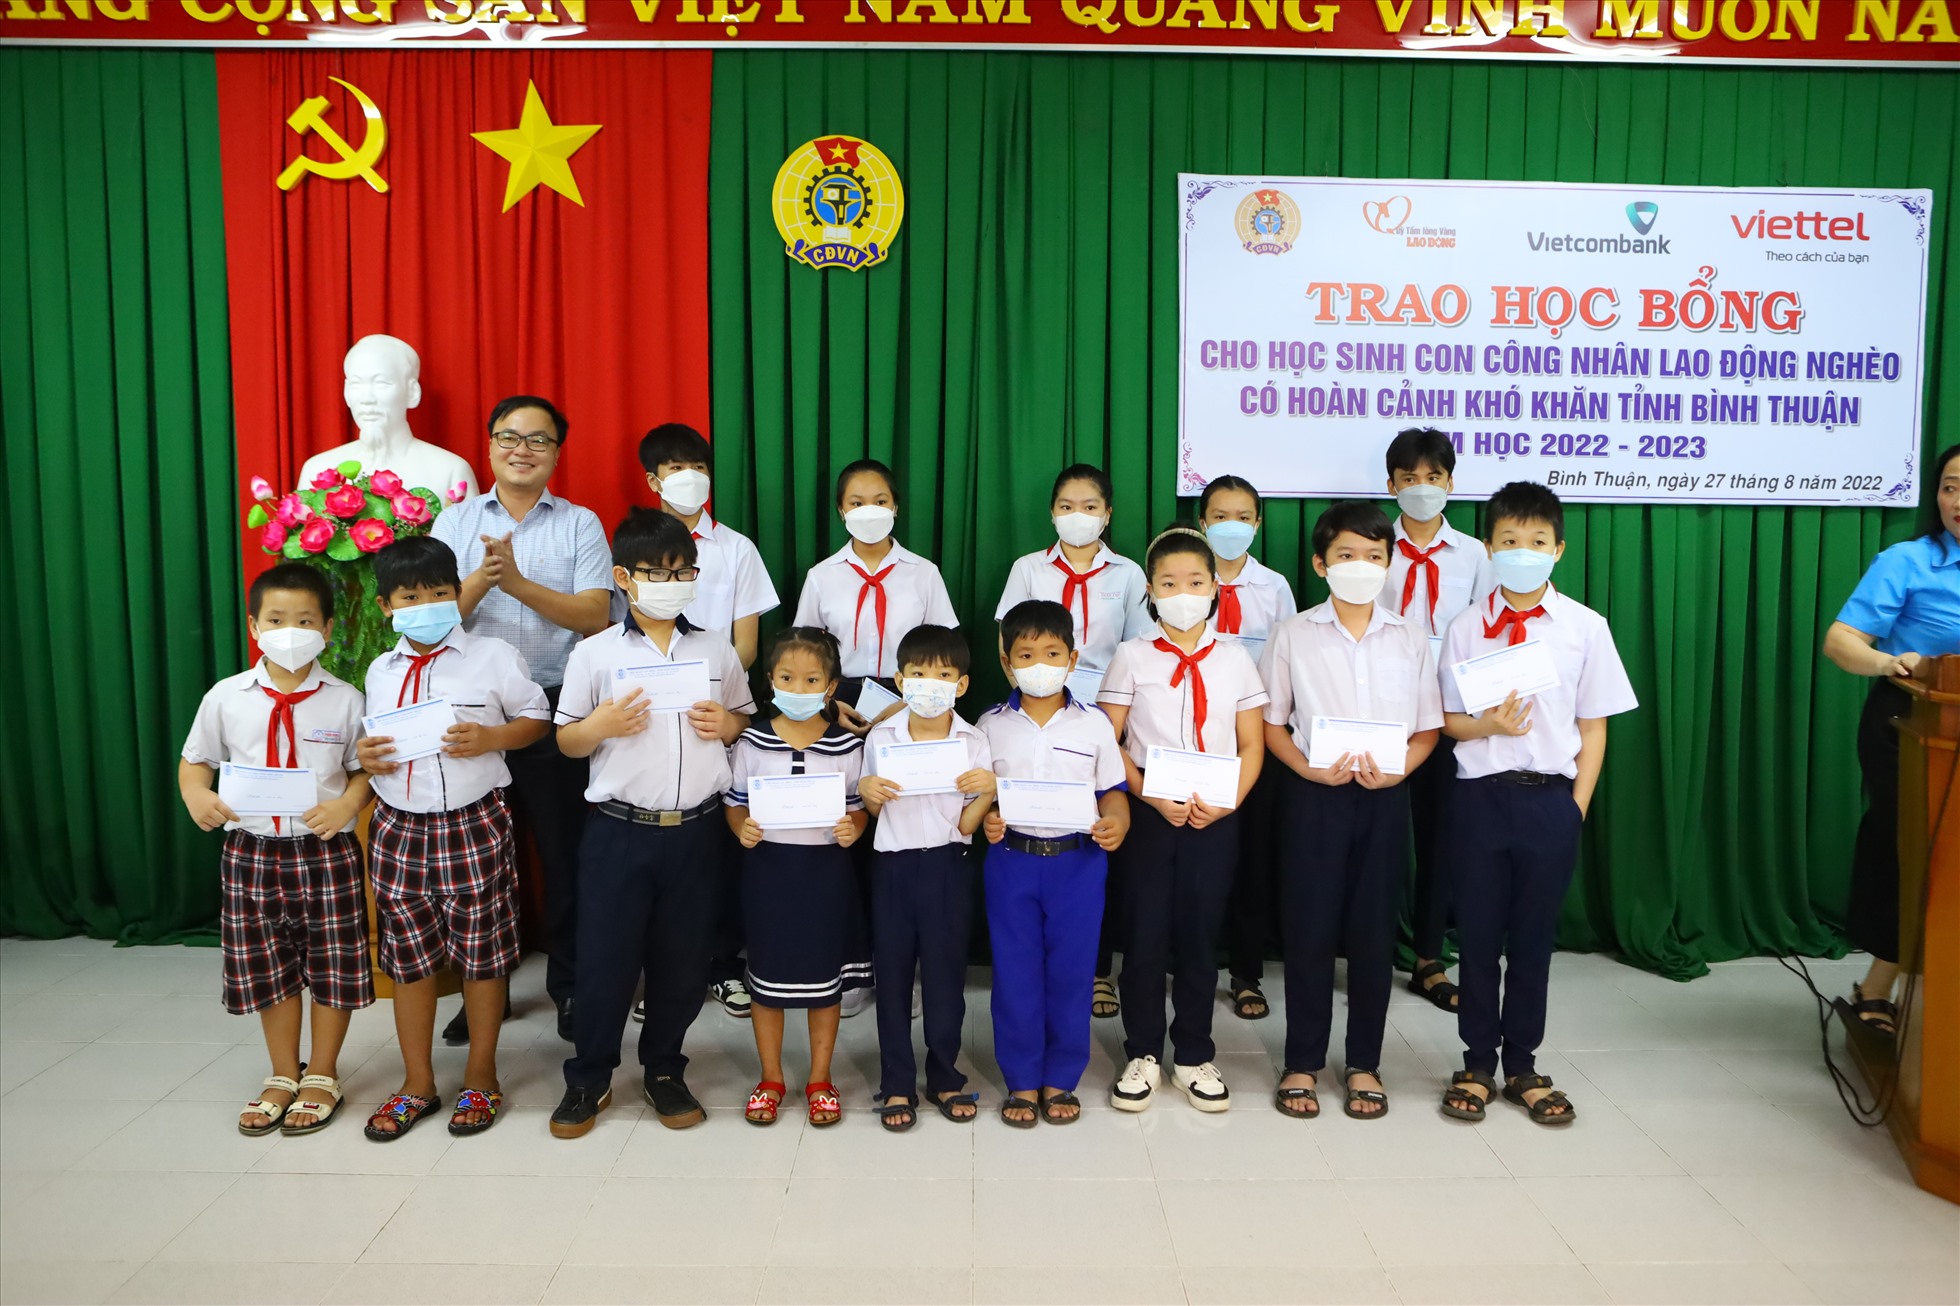 Đại diện Tập đoàn Công nghiệp - Viễn thông Quân đội (Viettel) tại Bình Thuận trao học bổng cho các cháu. Ảnh: DT